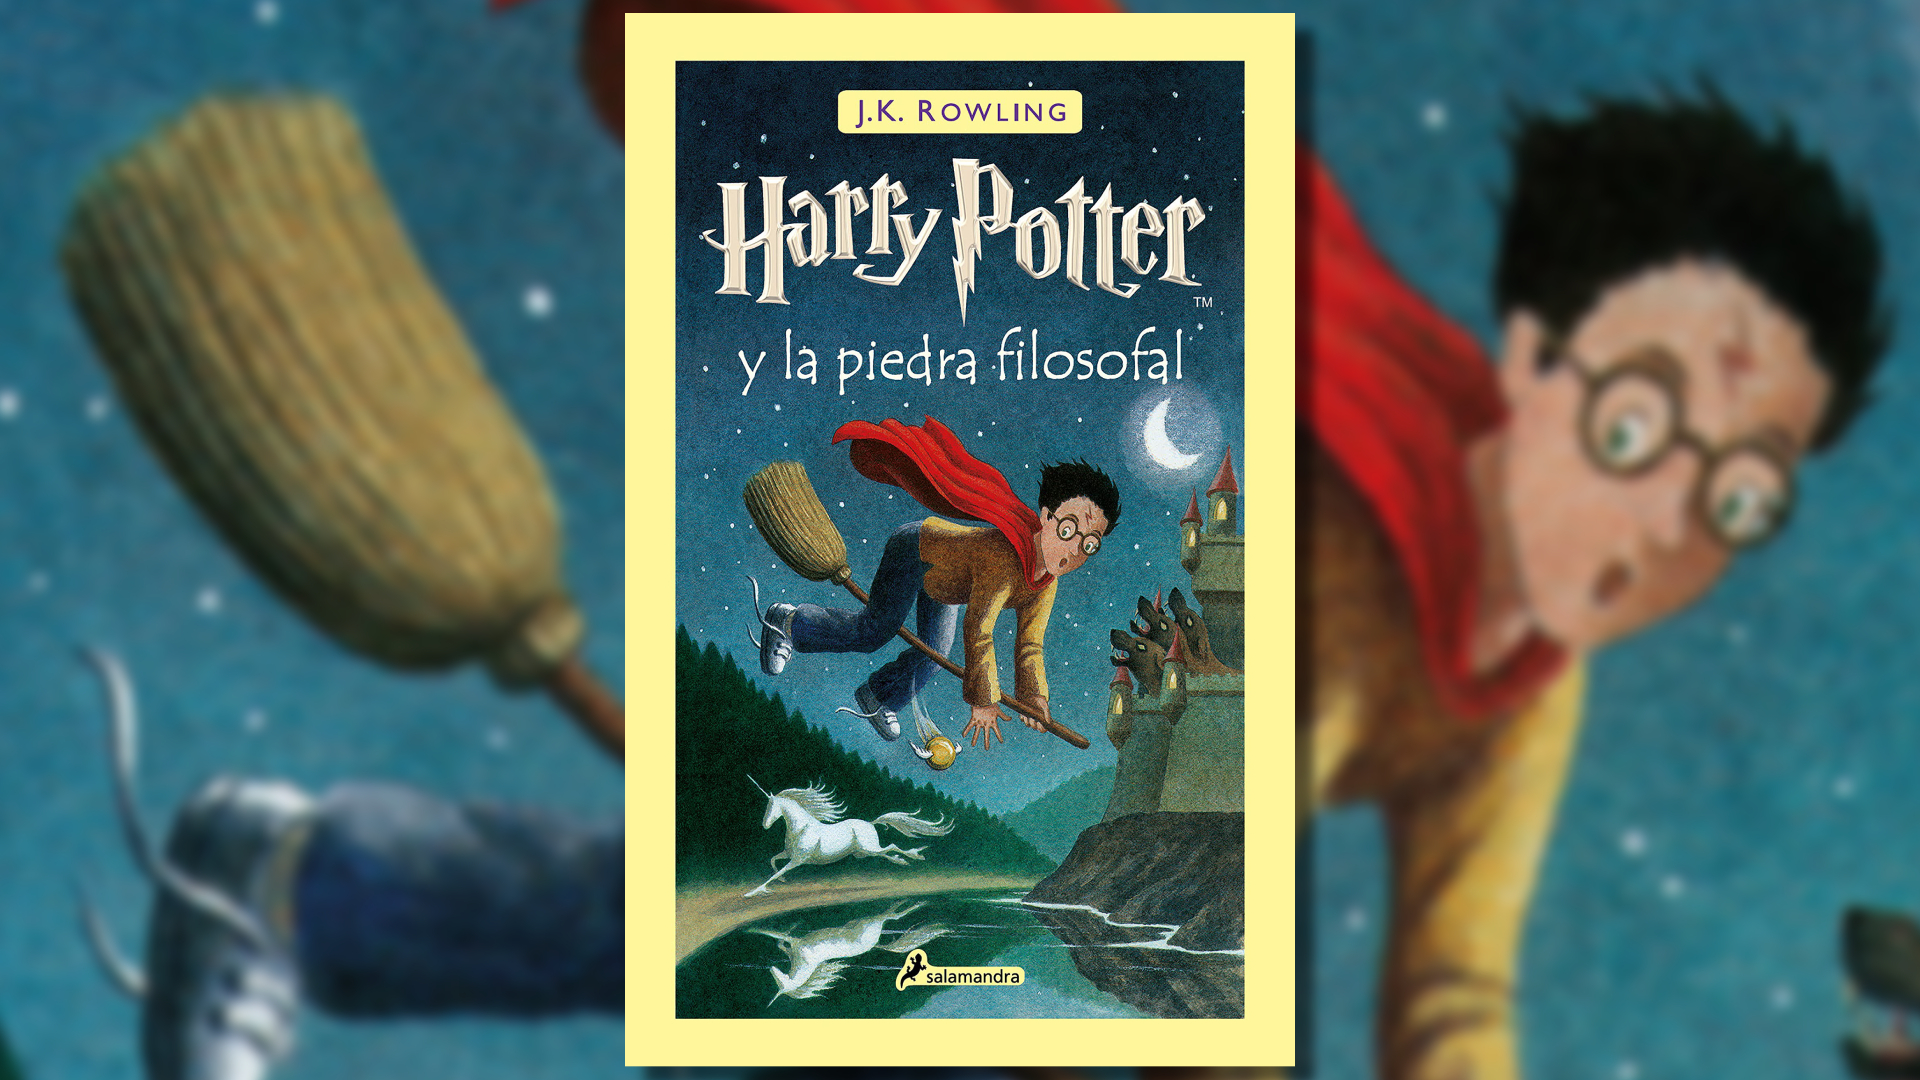 "Harry Potter y la piedra filosofal" fue publicado el 26 de junio de 1997 y adaptada a cine en 2001.